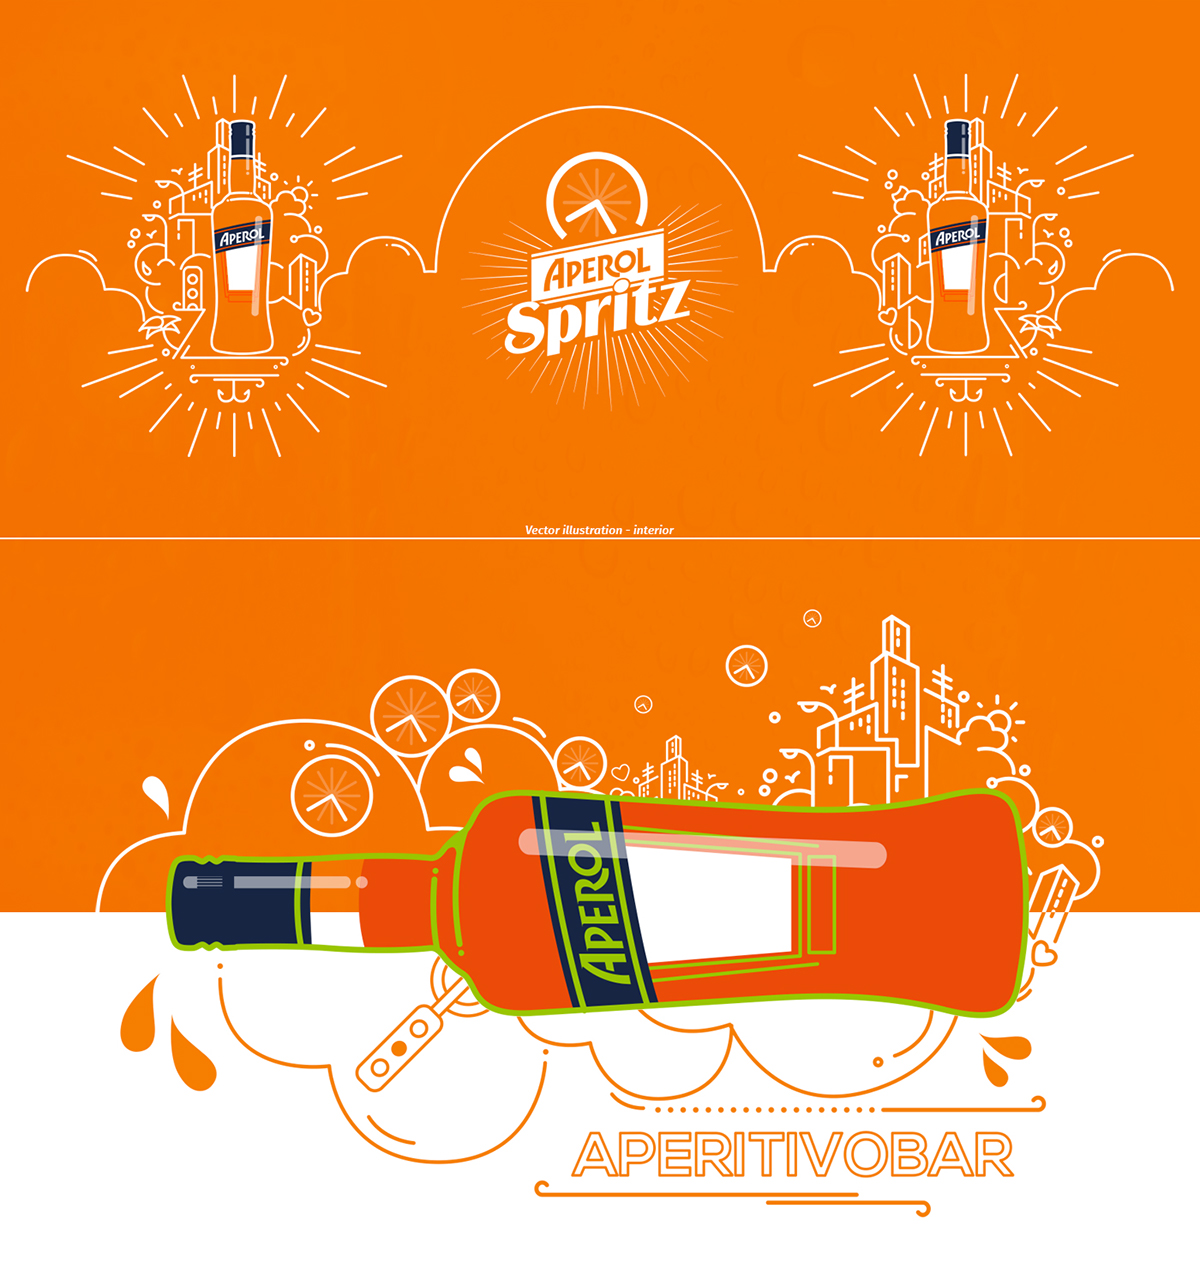 aperol Spritz Campari pop-up bar orange vintage aperitivo Italy